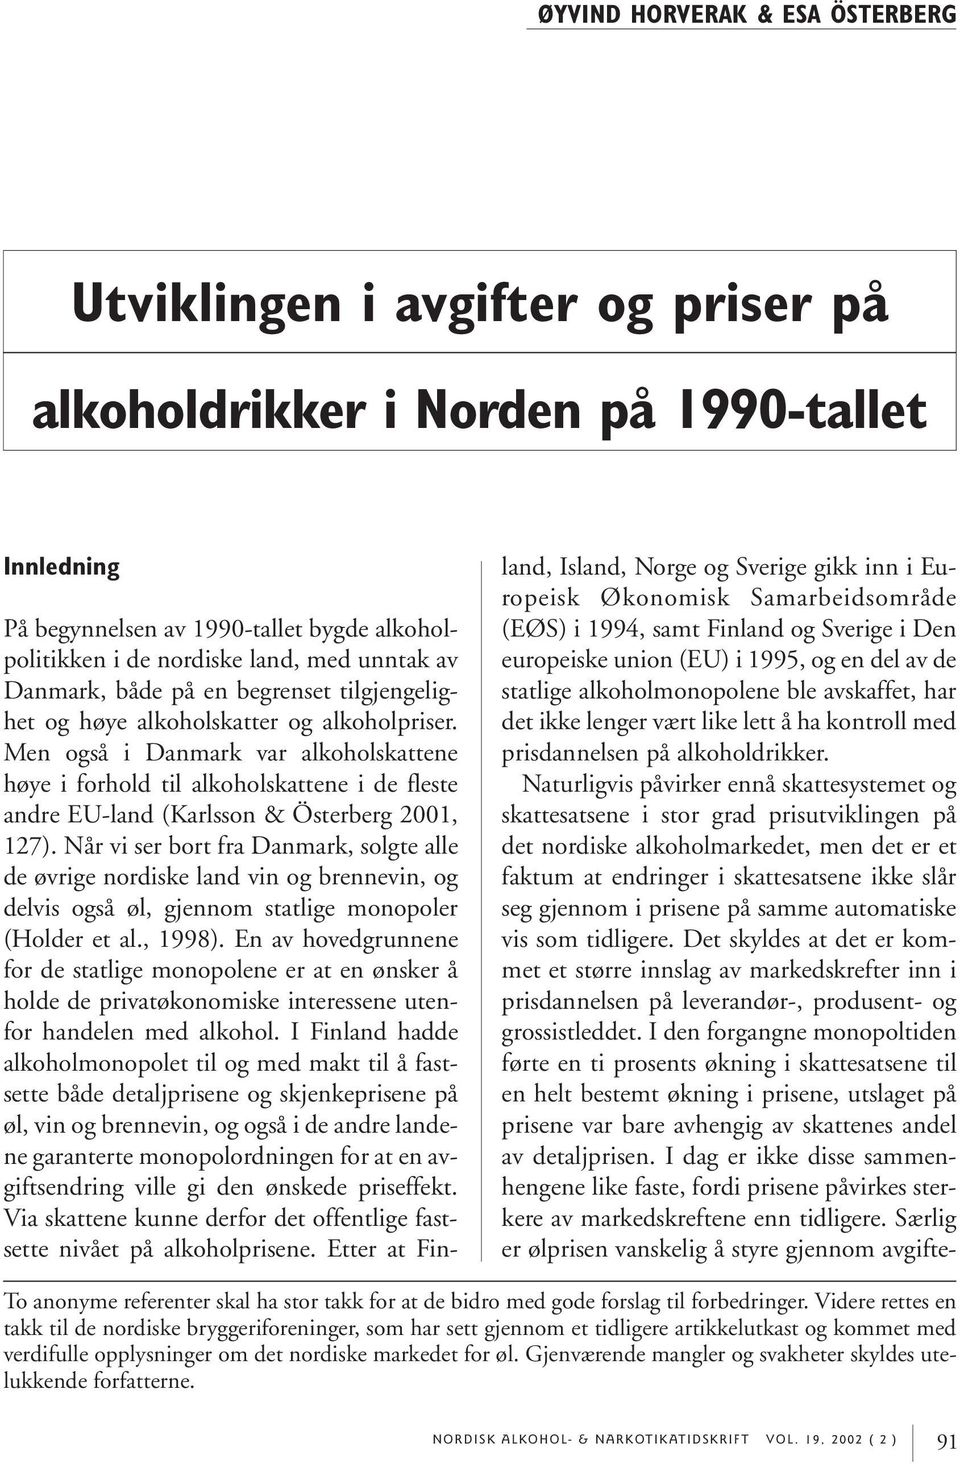 Men også i Danmark var alkoholskattene høye i forhold til alkoholskattene i de fleste andre EU-land (Karlsson & Österberg 2001, 127).